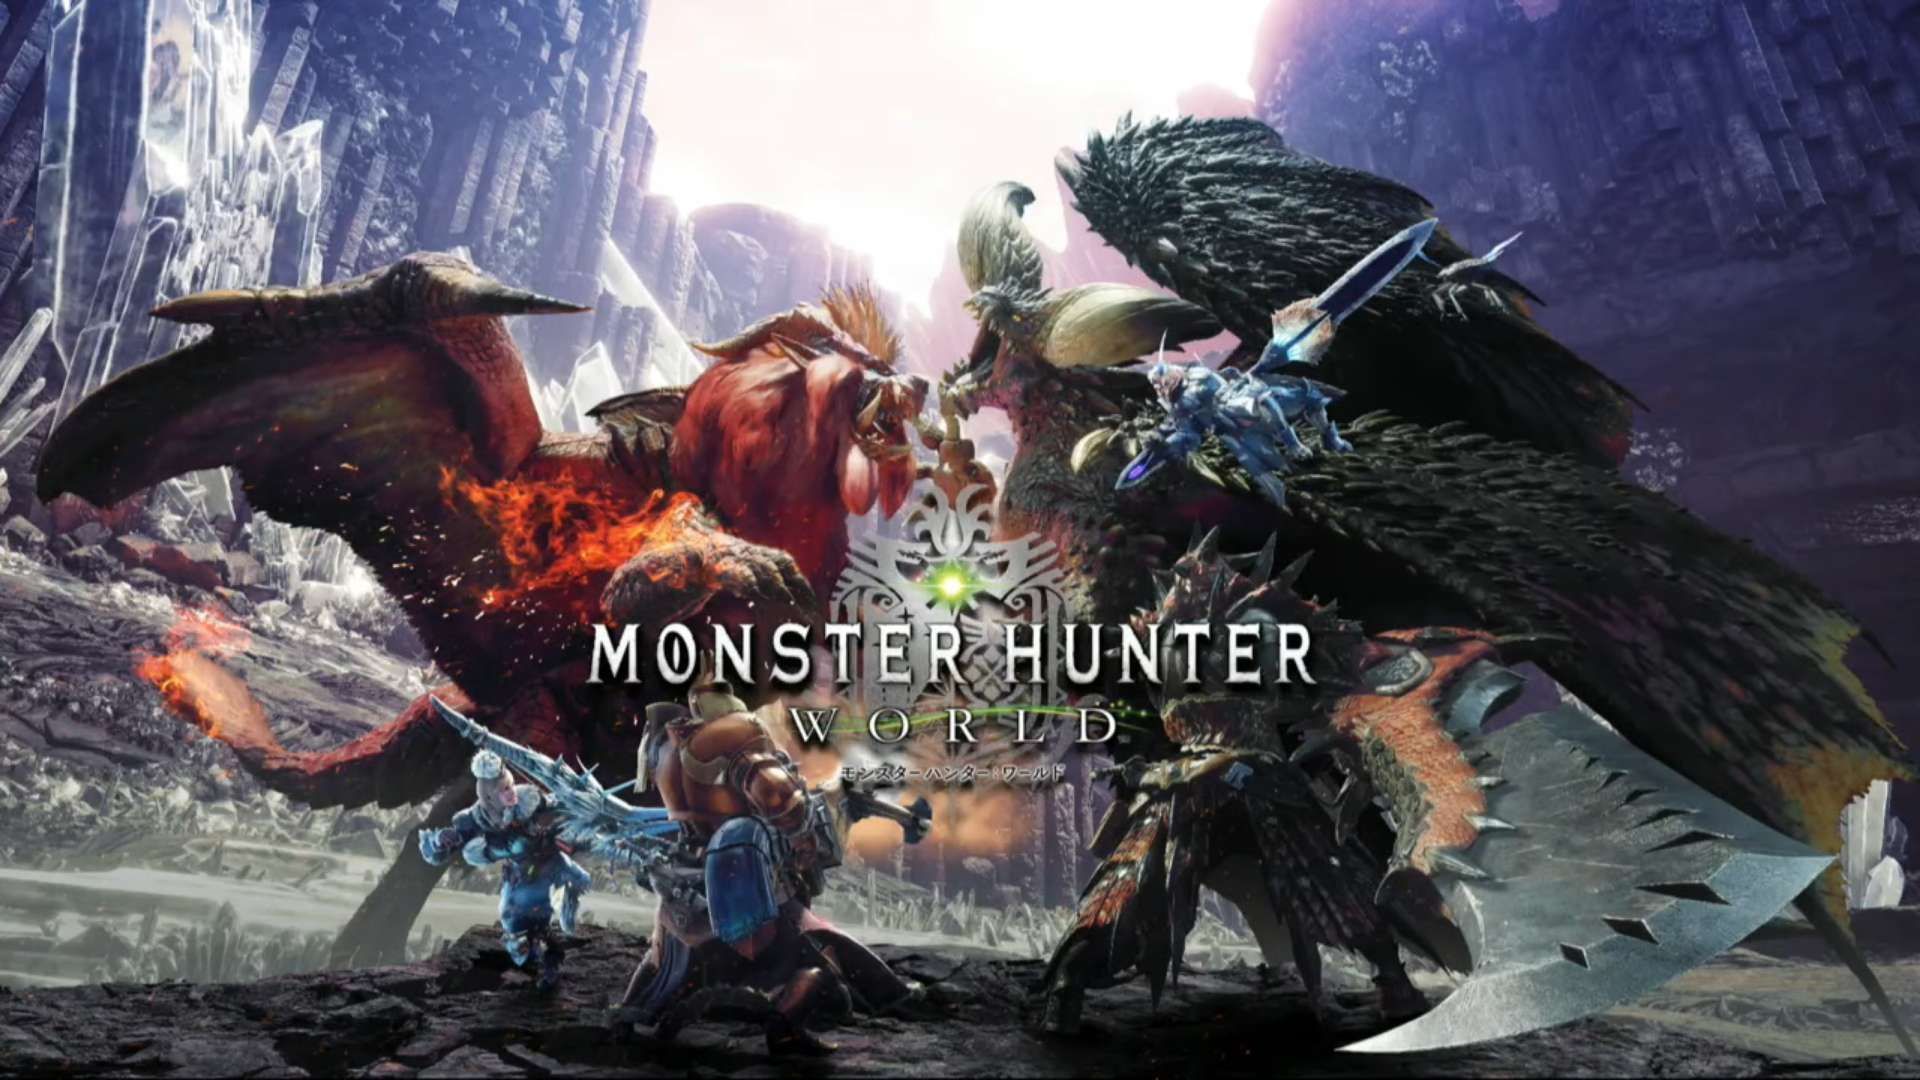 Monster Hunter: World Wallpaper Free Monster Hunter: World